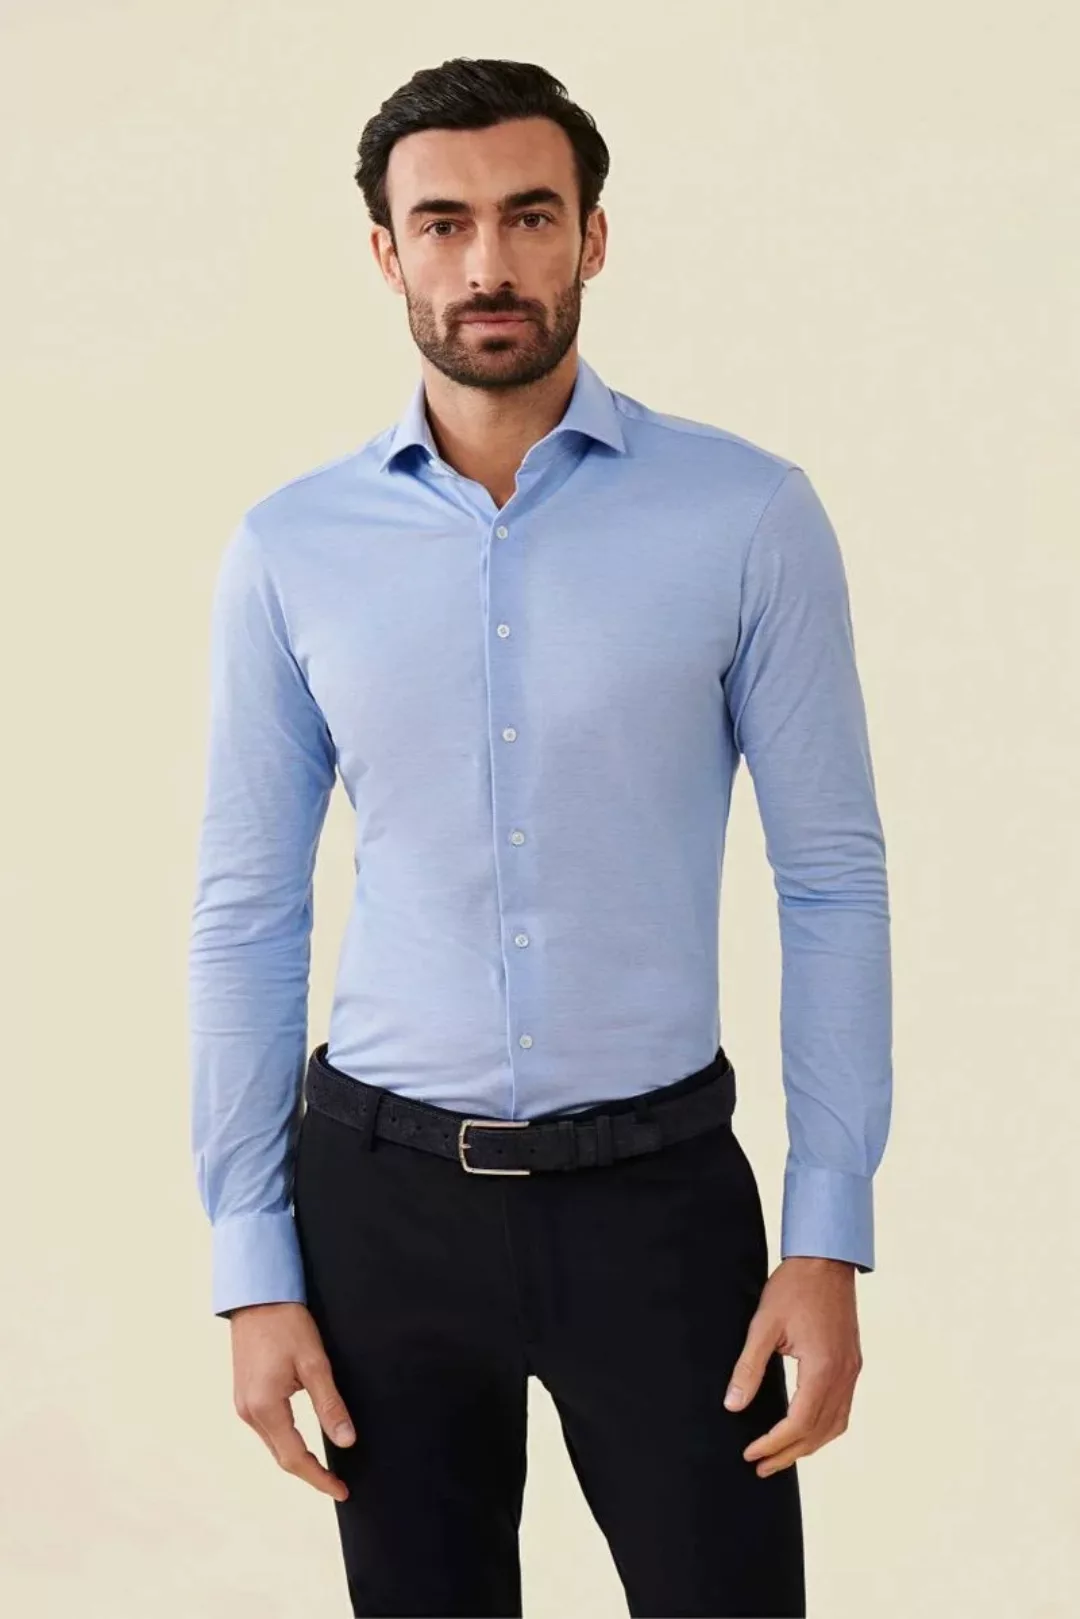 Cavallaro Piqué Hemd Hellblau - Größe 44 günstig online kaufen